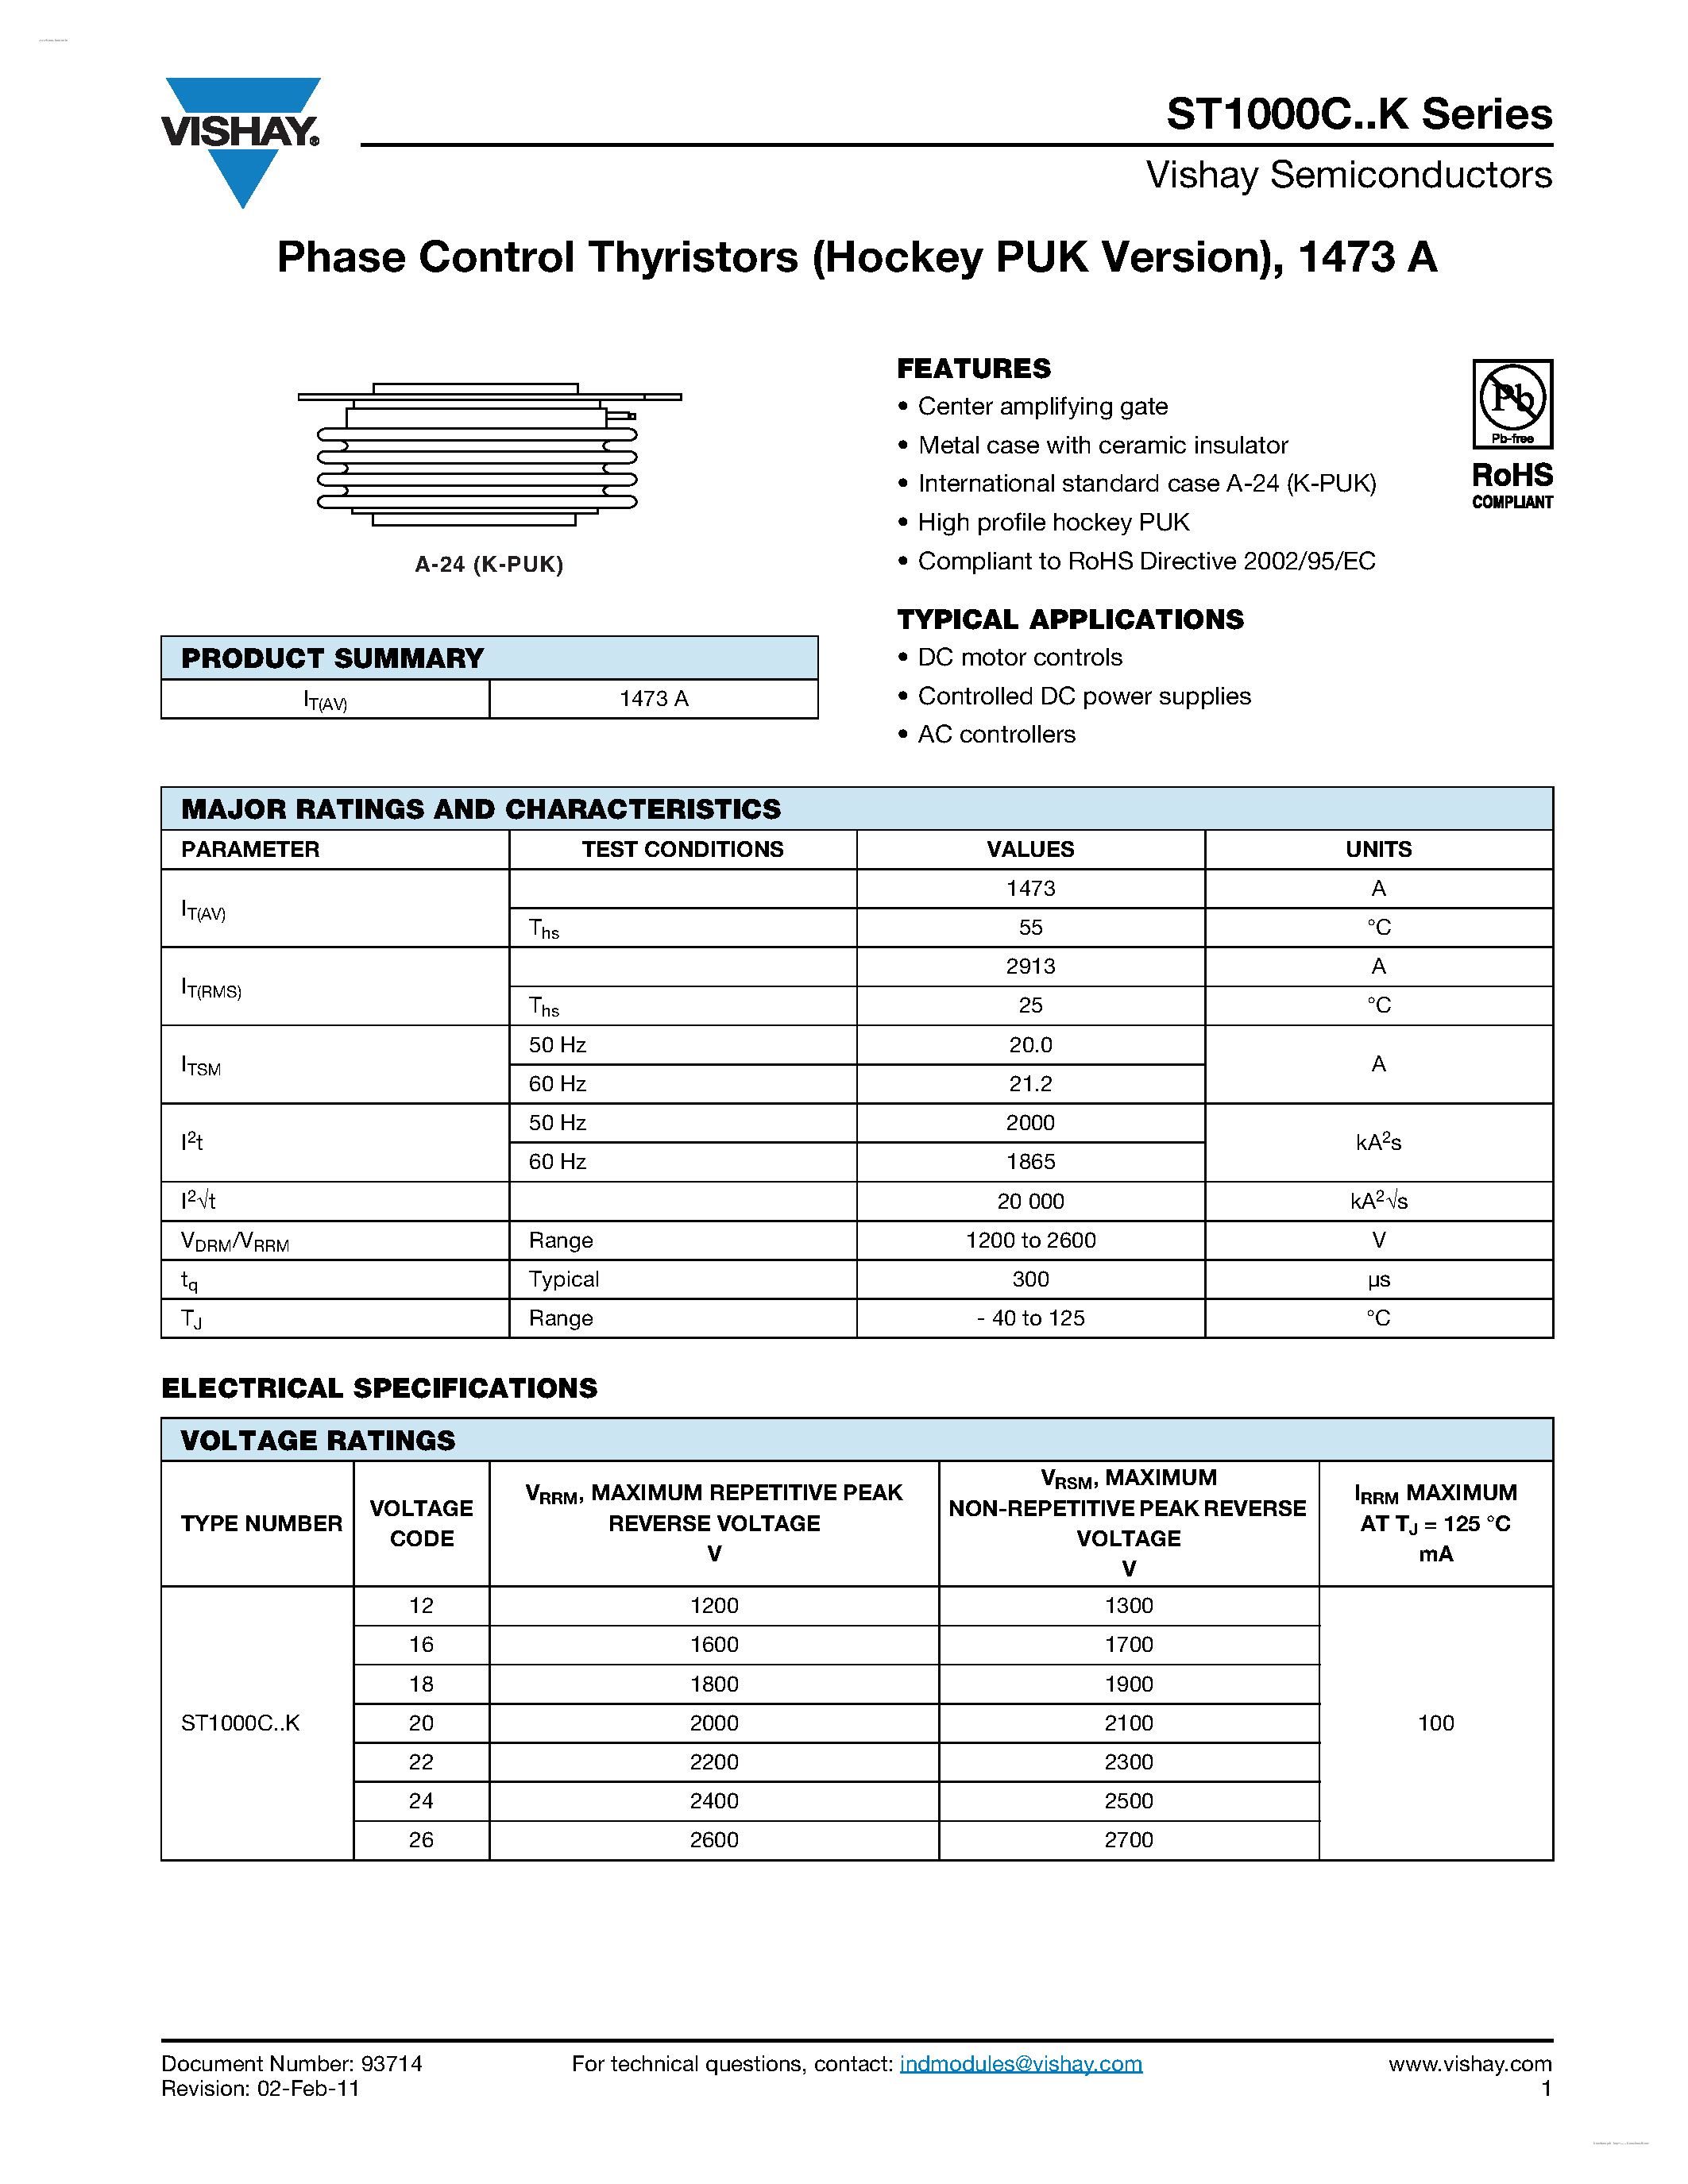 Datasheet ST1000C12K - (ST1000CxxK) Phase Control Thyristors page 1